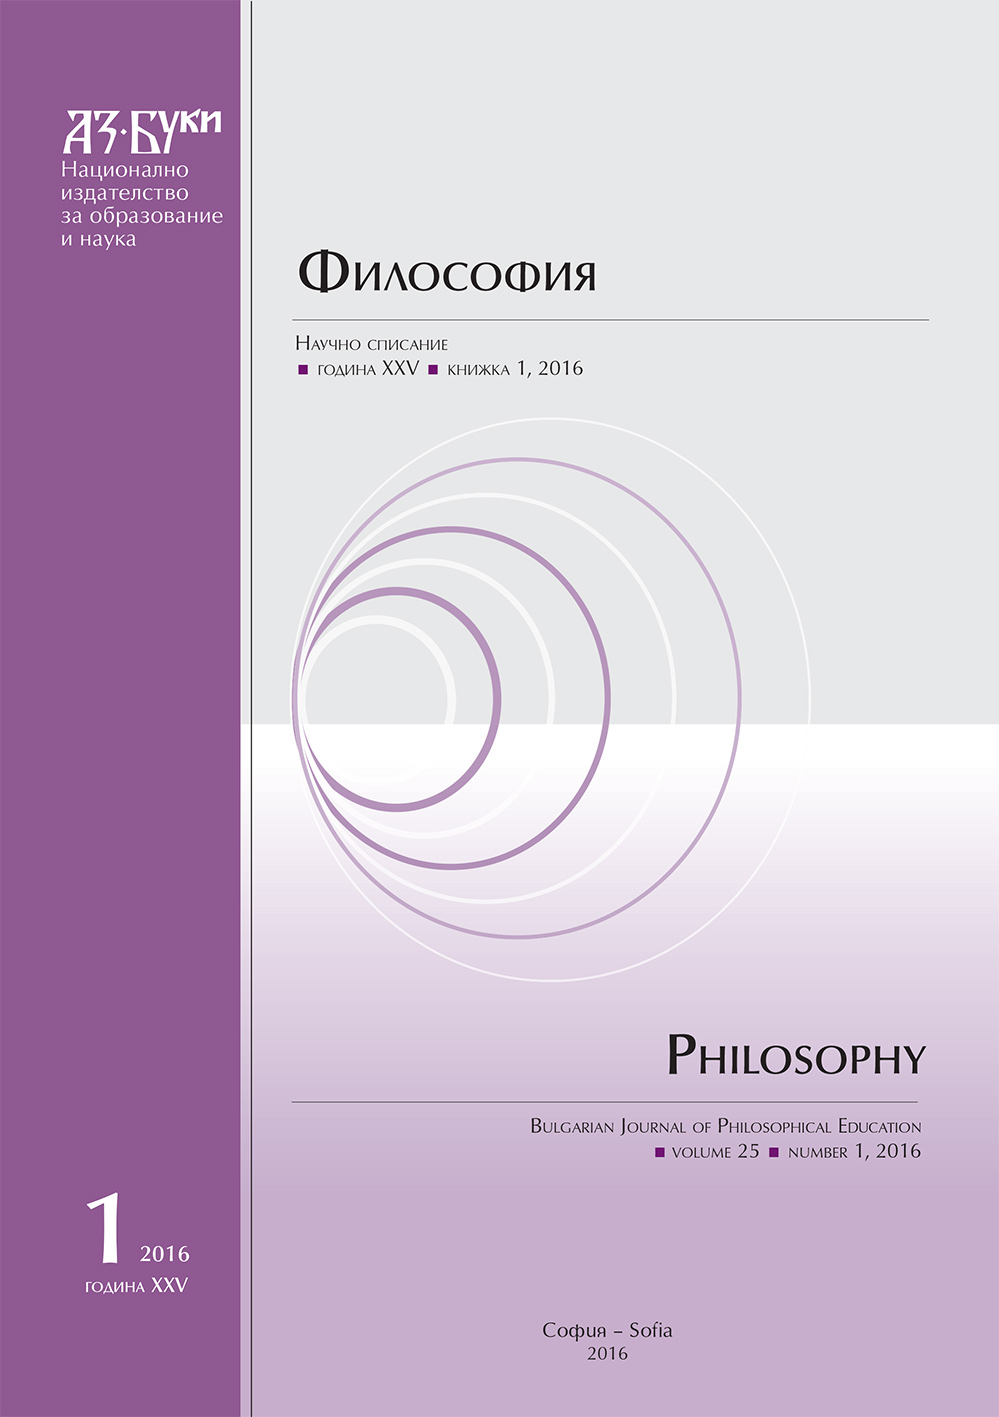 Онтологията – патосът на българския философски разум